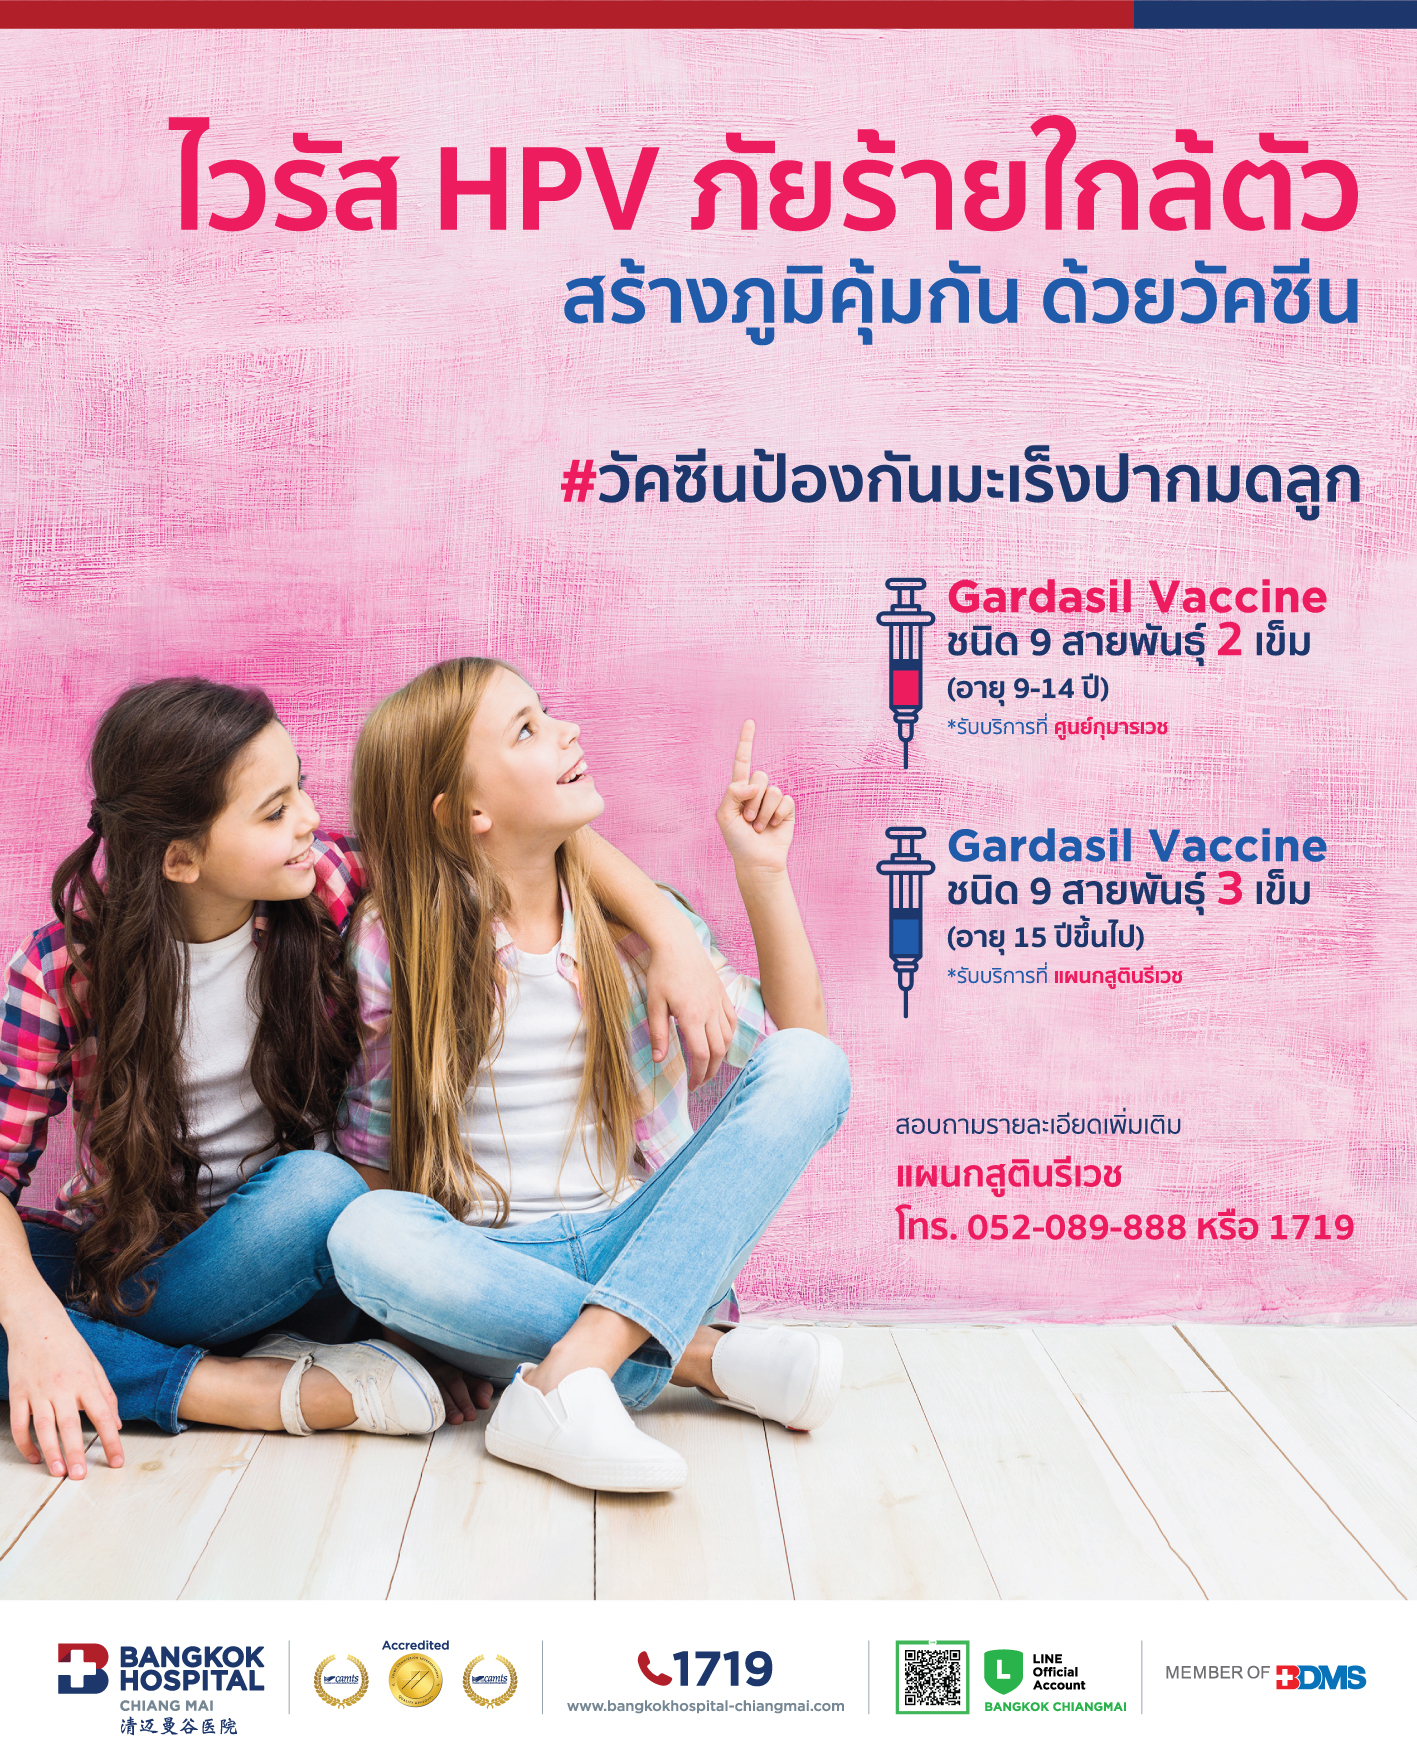 วัคซีนป้องกันมะเร็งปากมดลูกไวรัส HPV ชนิด 9 สายพันธุ์ 2 เข็ม